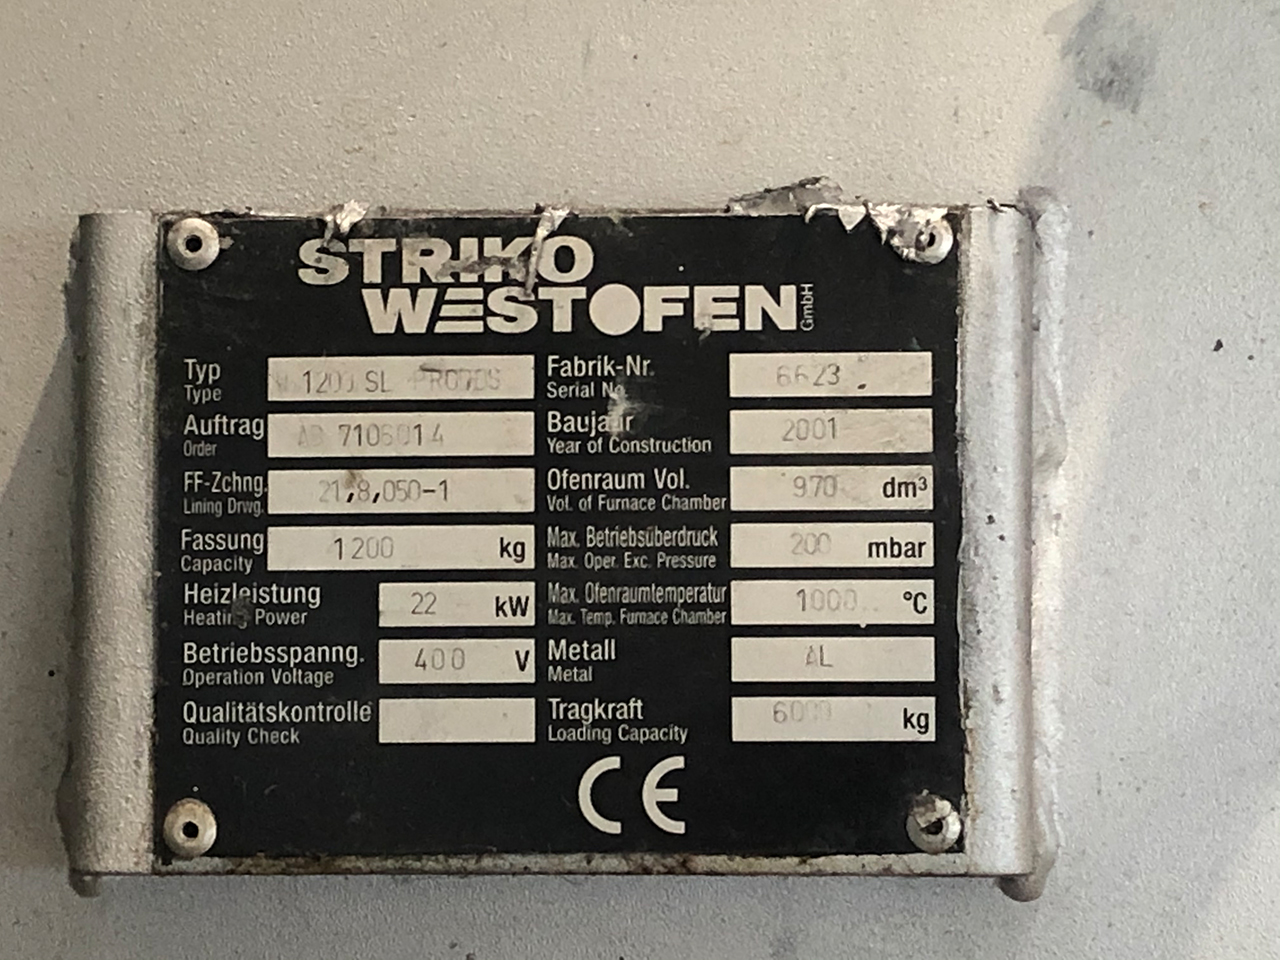 StrikoWestofen W 1200 SL ProDos DPC Horno dosificador O1814, usado